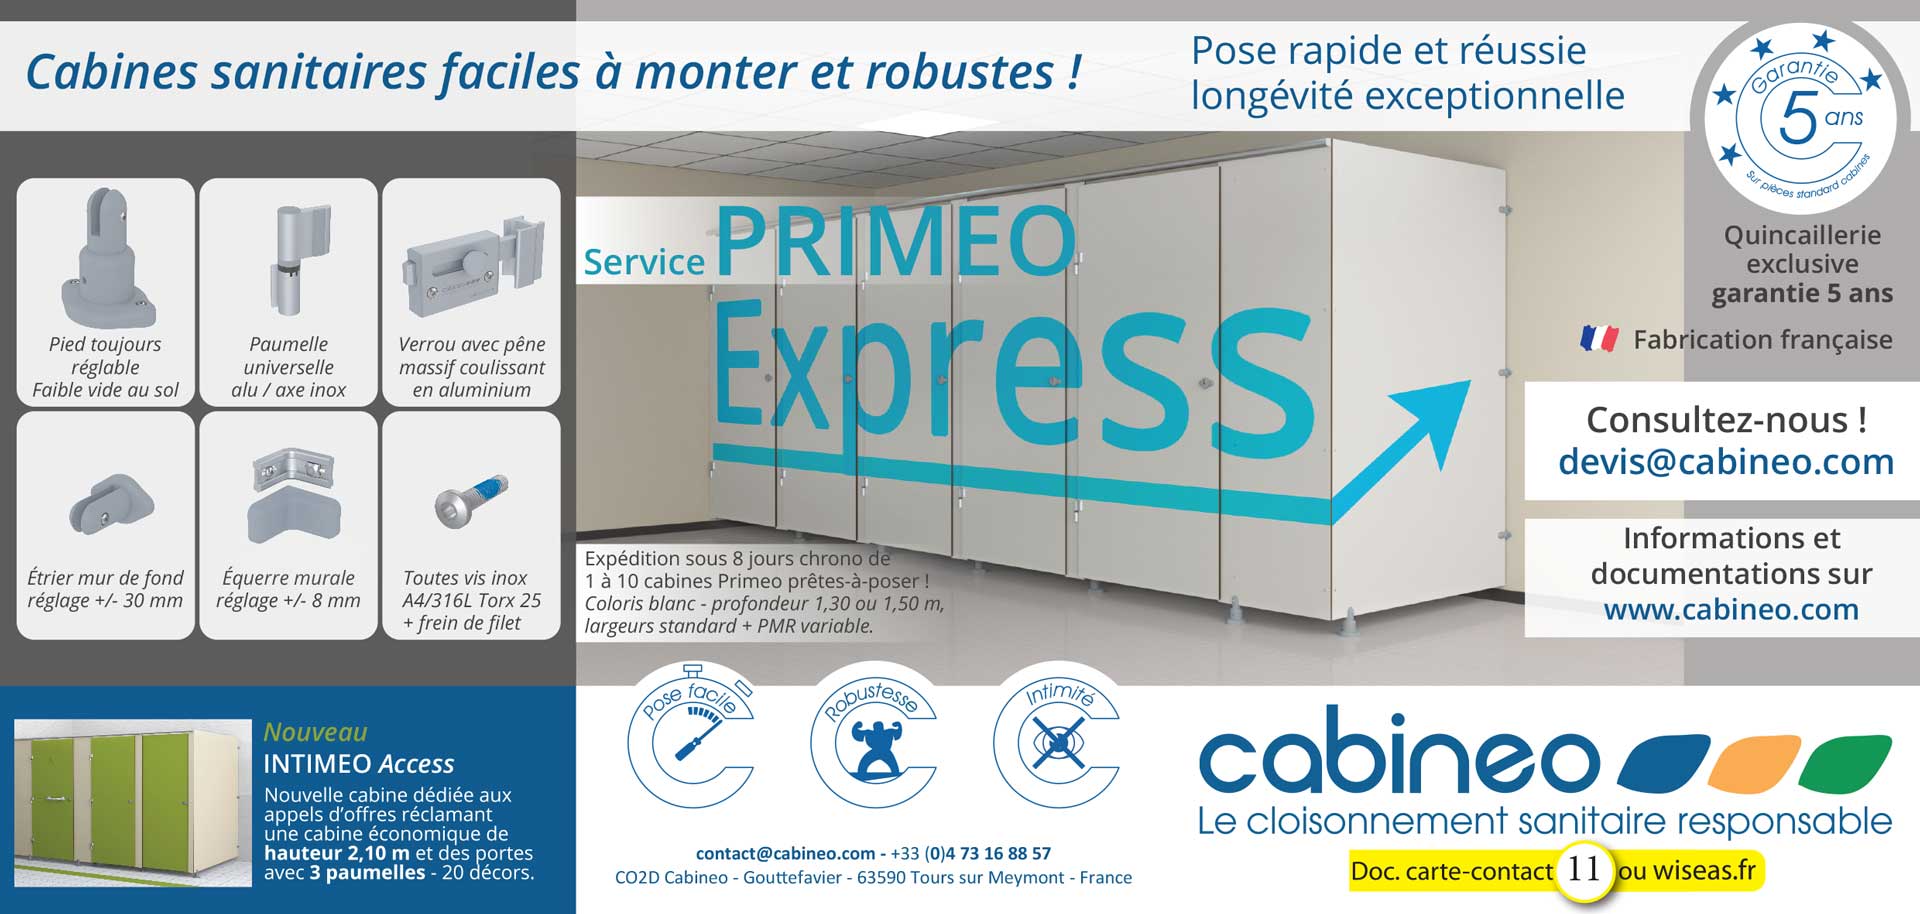 Service Primeo Express - Expédition sous 8 jours - Intimeo Access